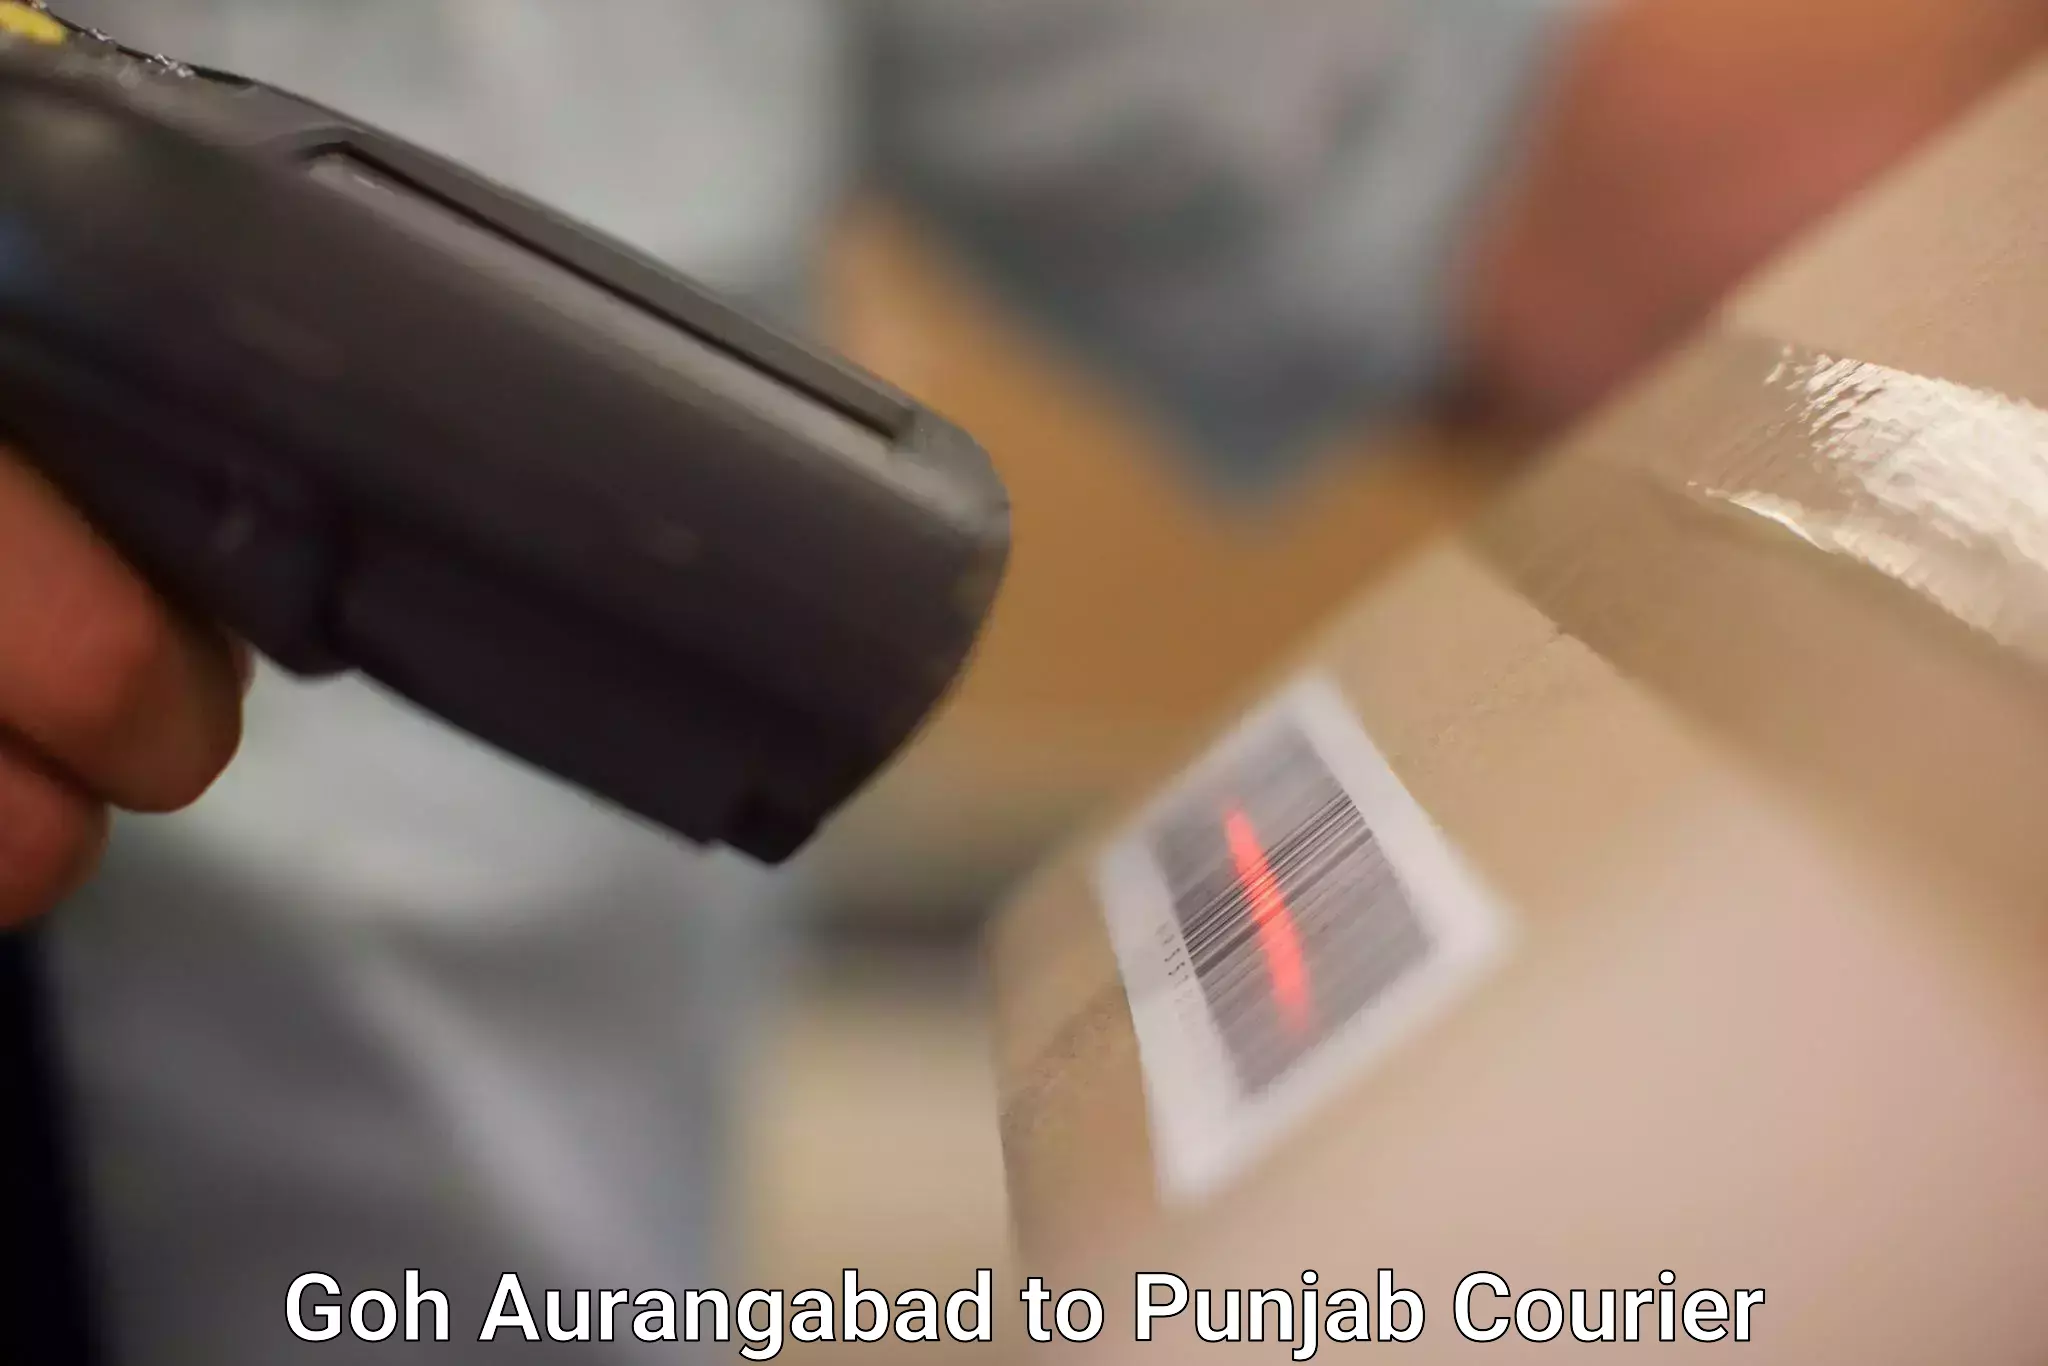 Courier dispatch services Goh Aurangabad to Punjab